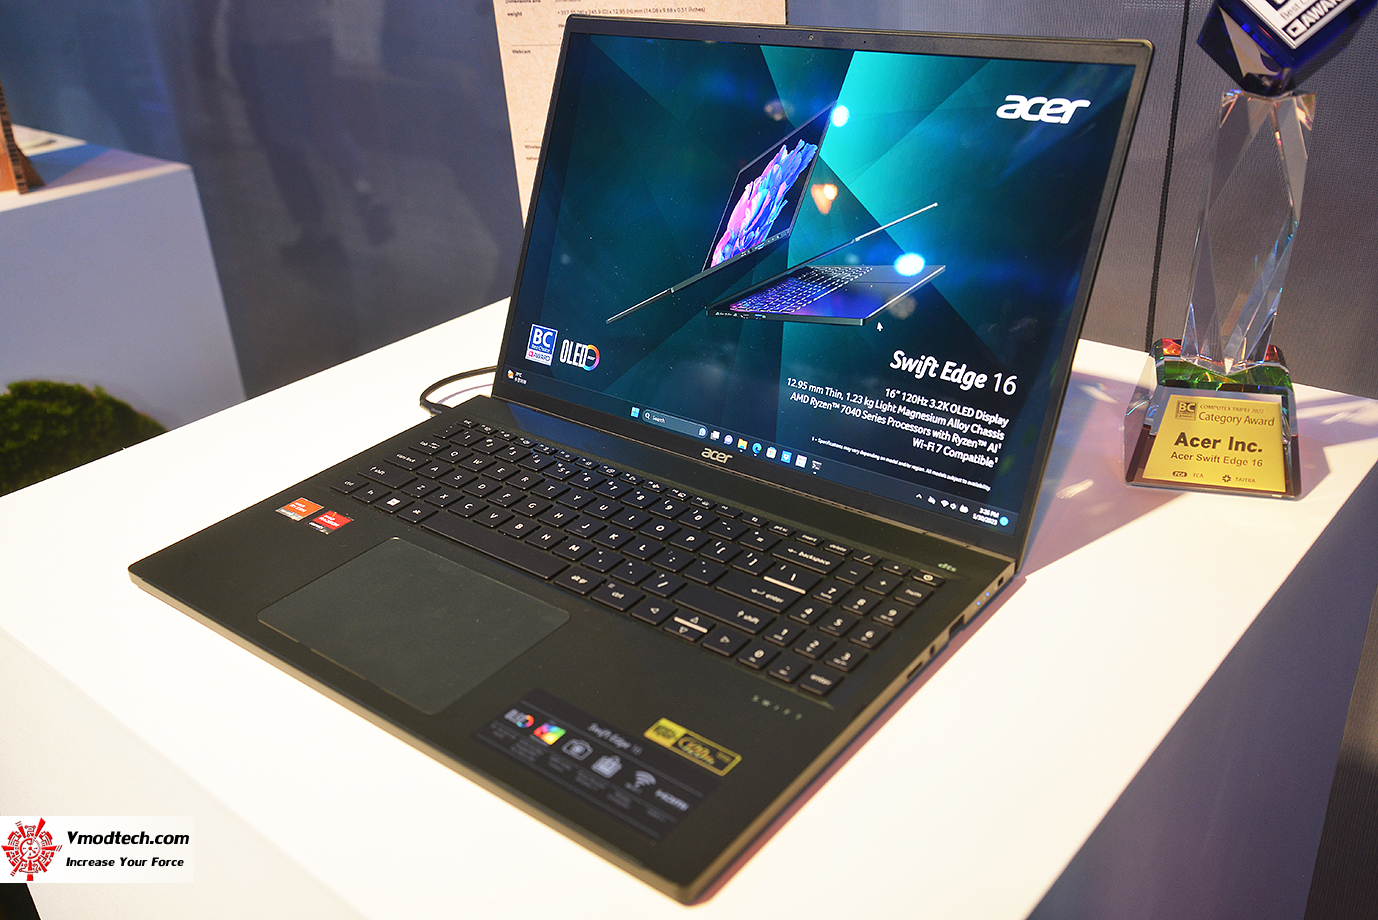 dsc 9511 Acer@Computex2023 เยี่ยมชมบูธเอเซอร์กับผลิตภัณฑ์แล็ปท็อป อุปกรณ์พีซีคอมโพเน้นท์มากมายรุ่นใหม่ล่าสุดตอบโจทย์สายเกมมิ่งและรักษ์โลก